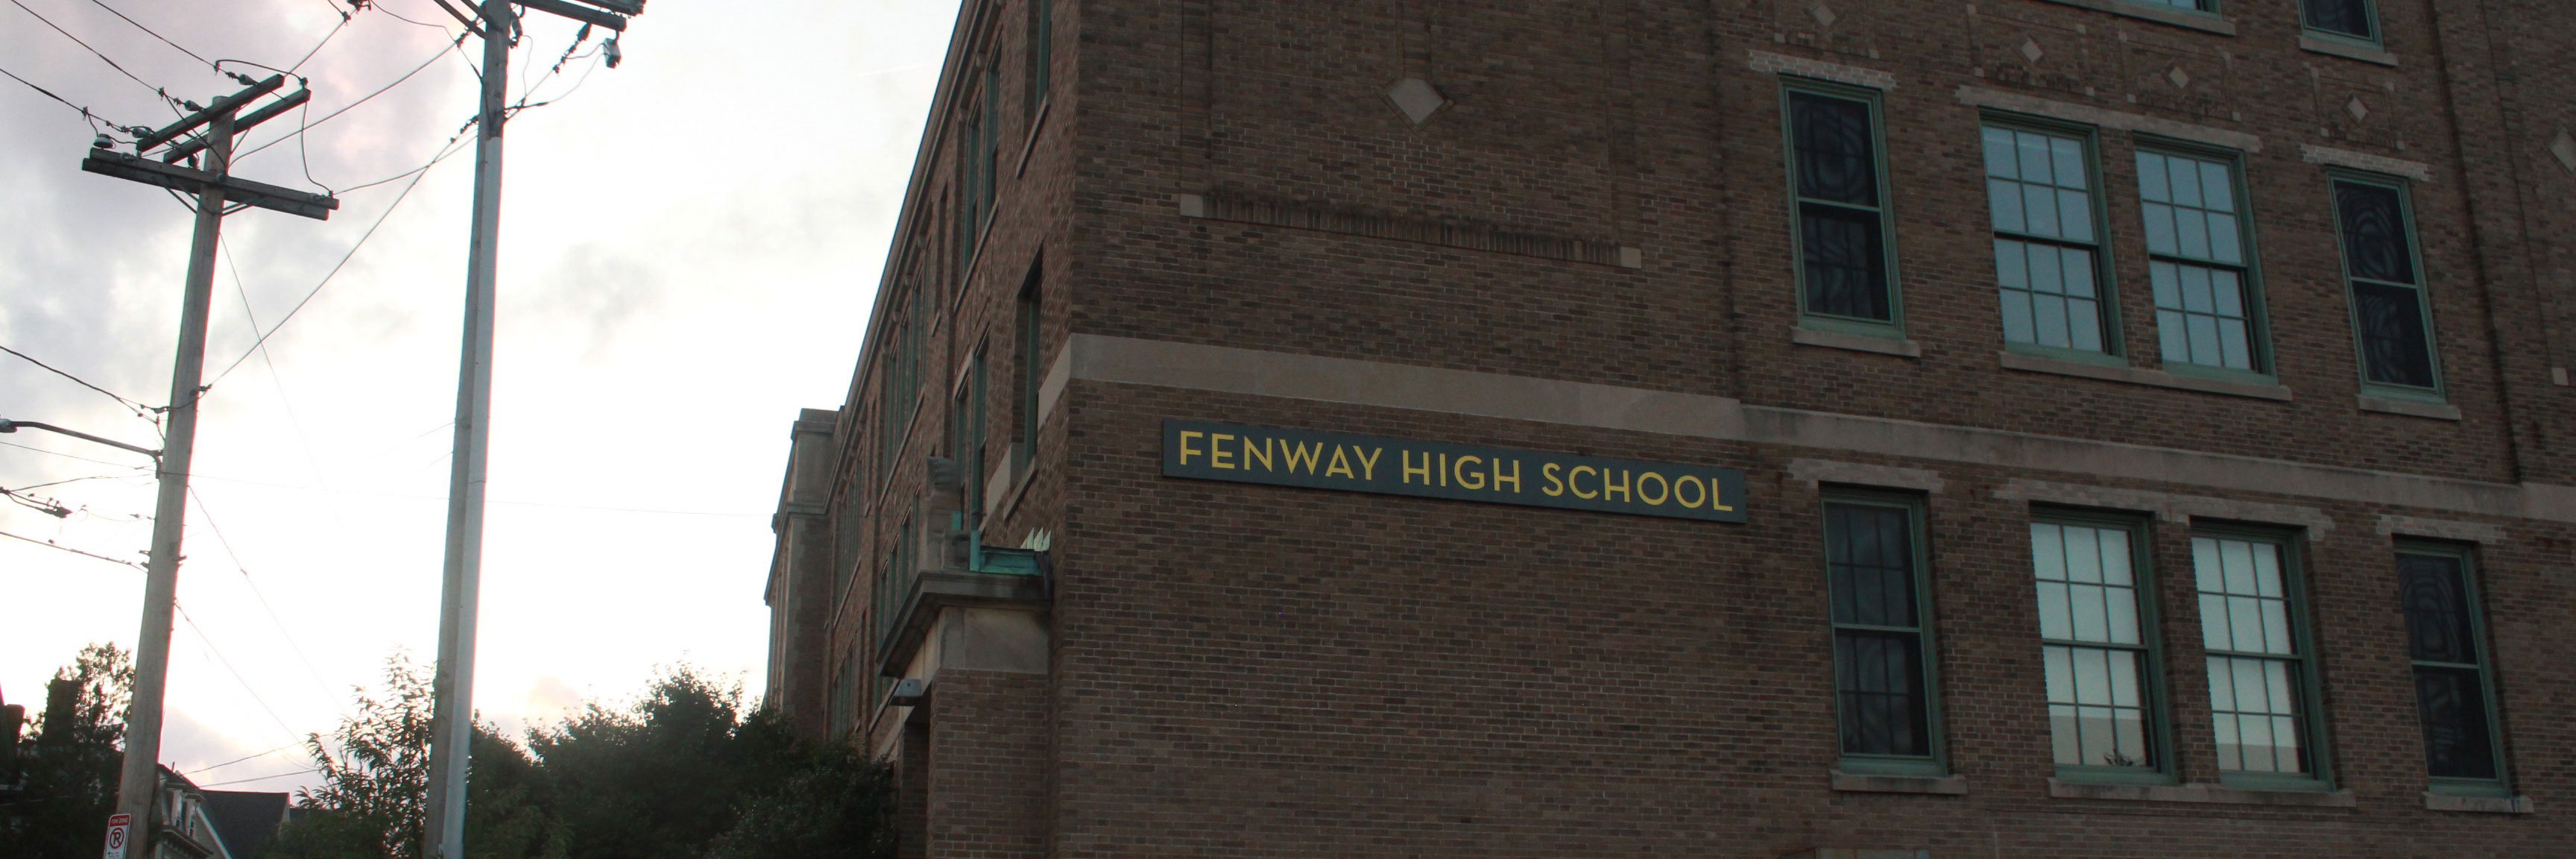 Fenway High School Buscador de Escuelas de Boston